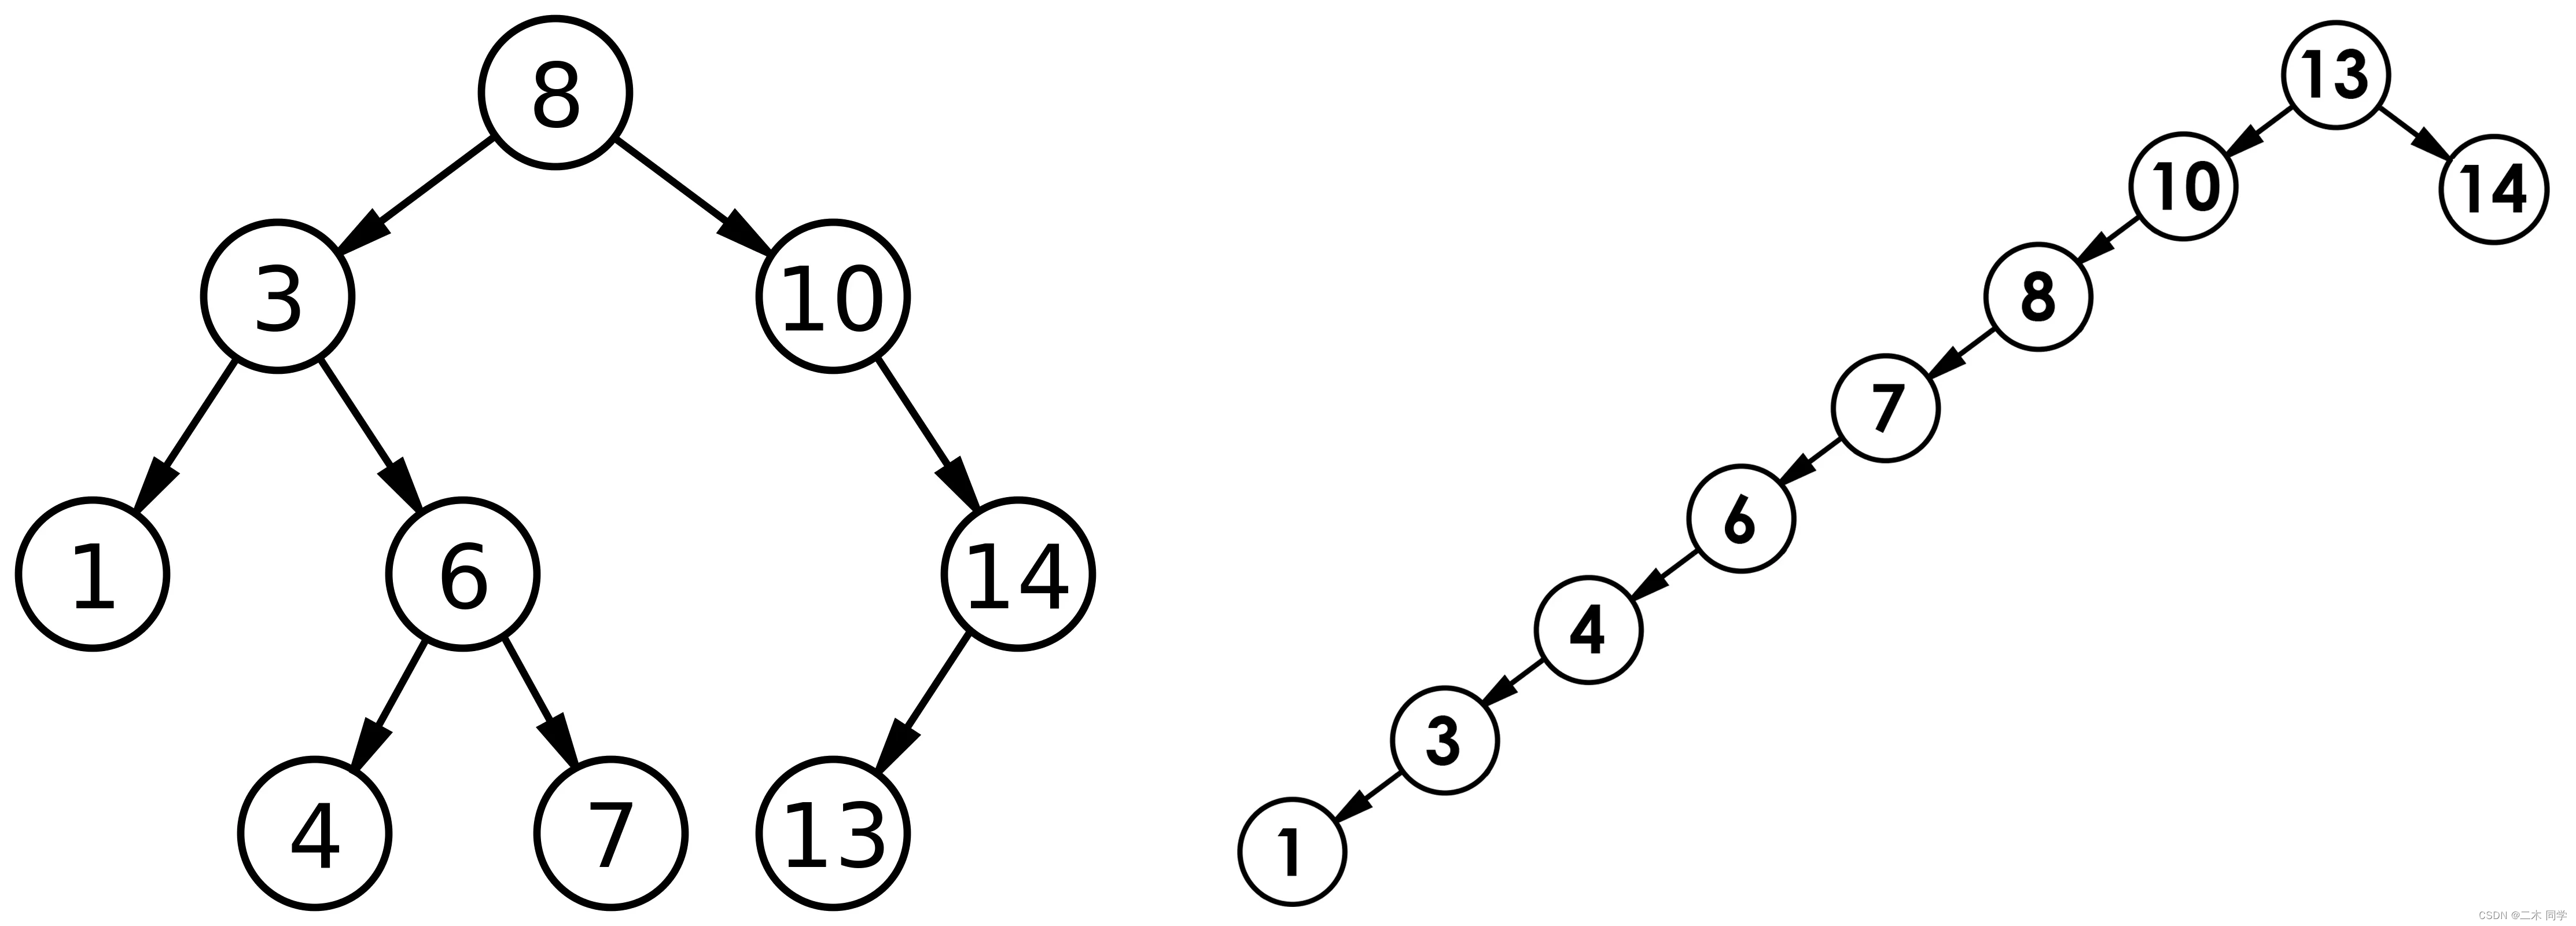 【C++】二叉搜索树的模拟实现